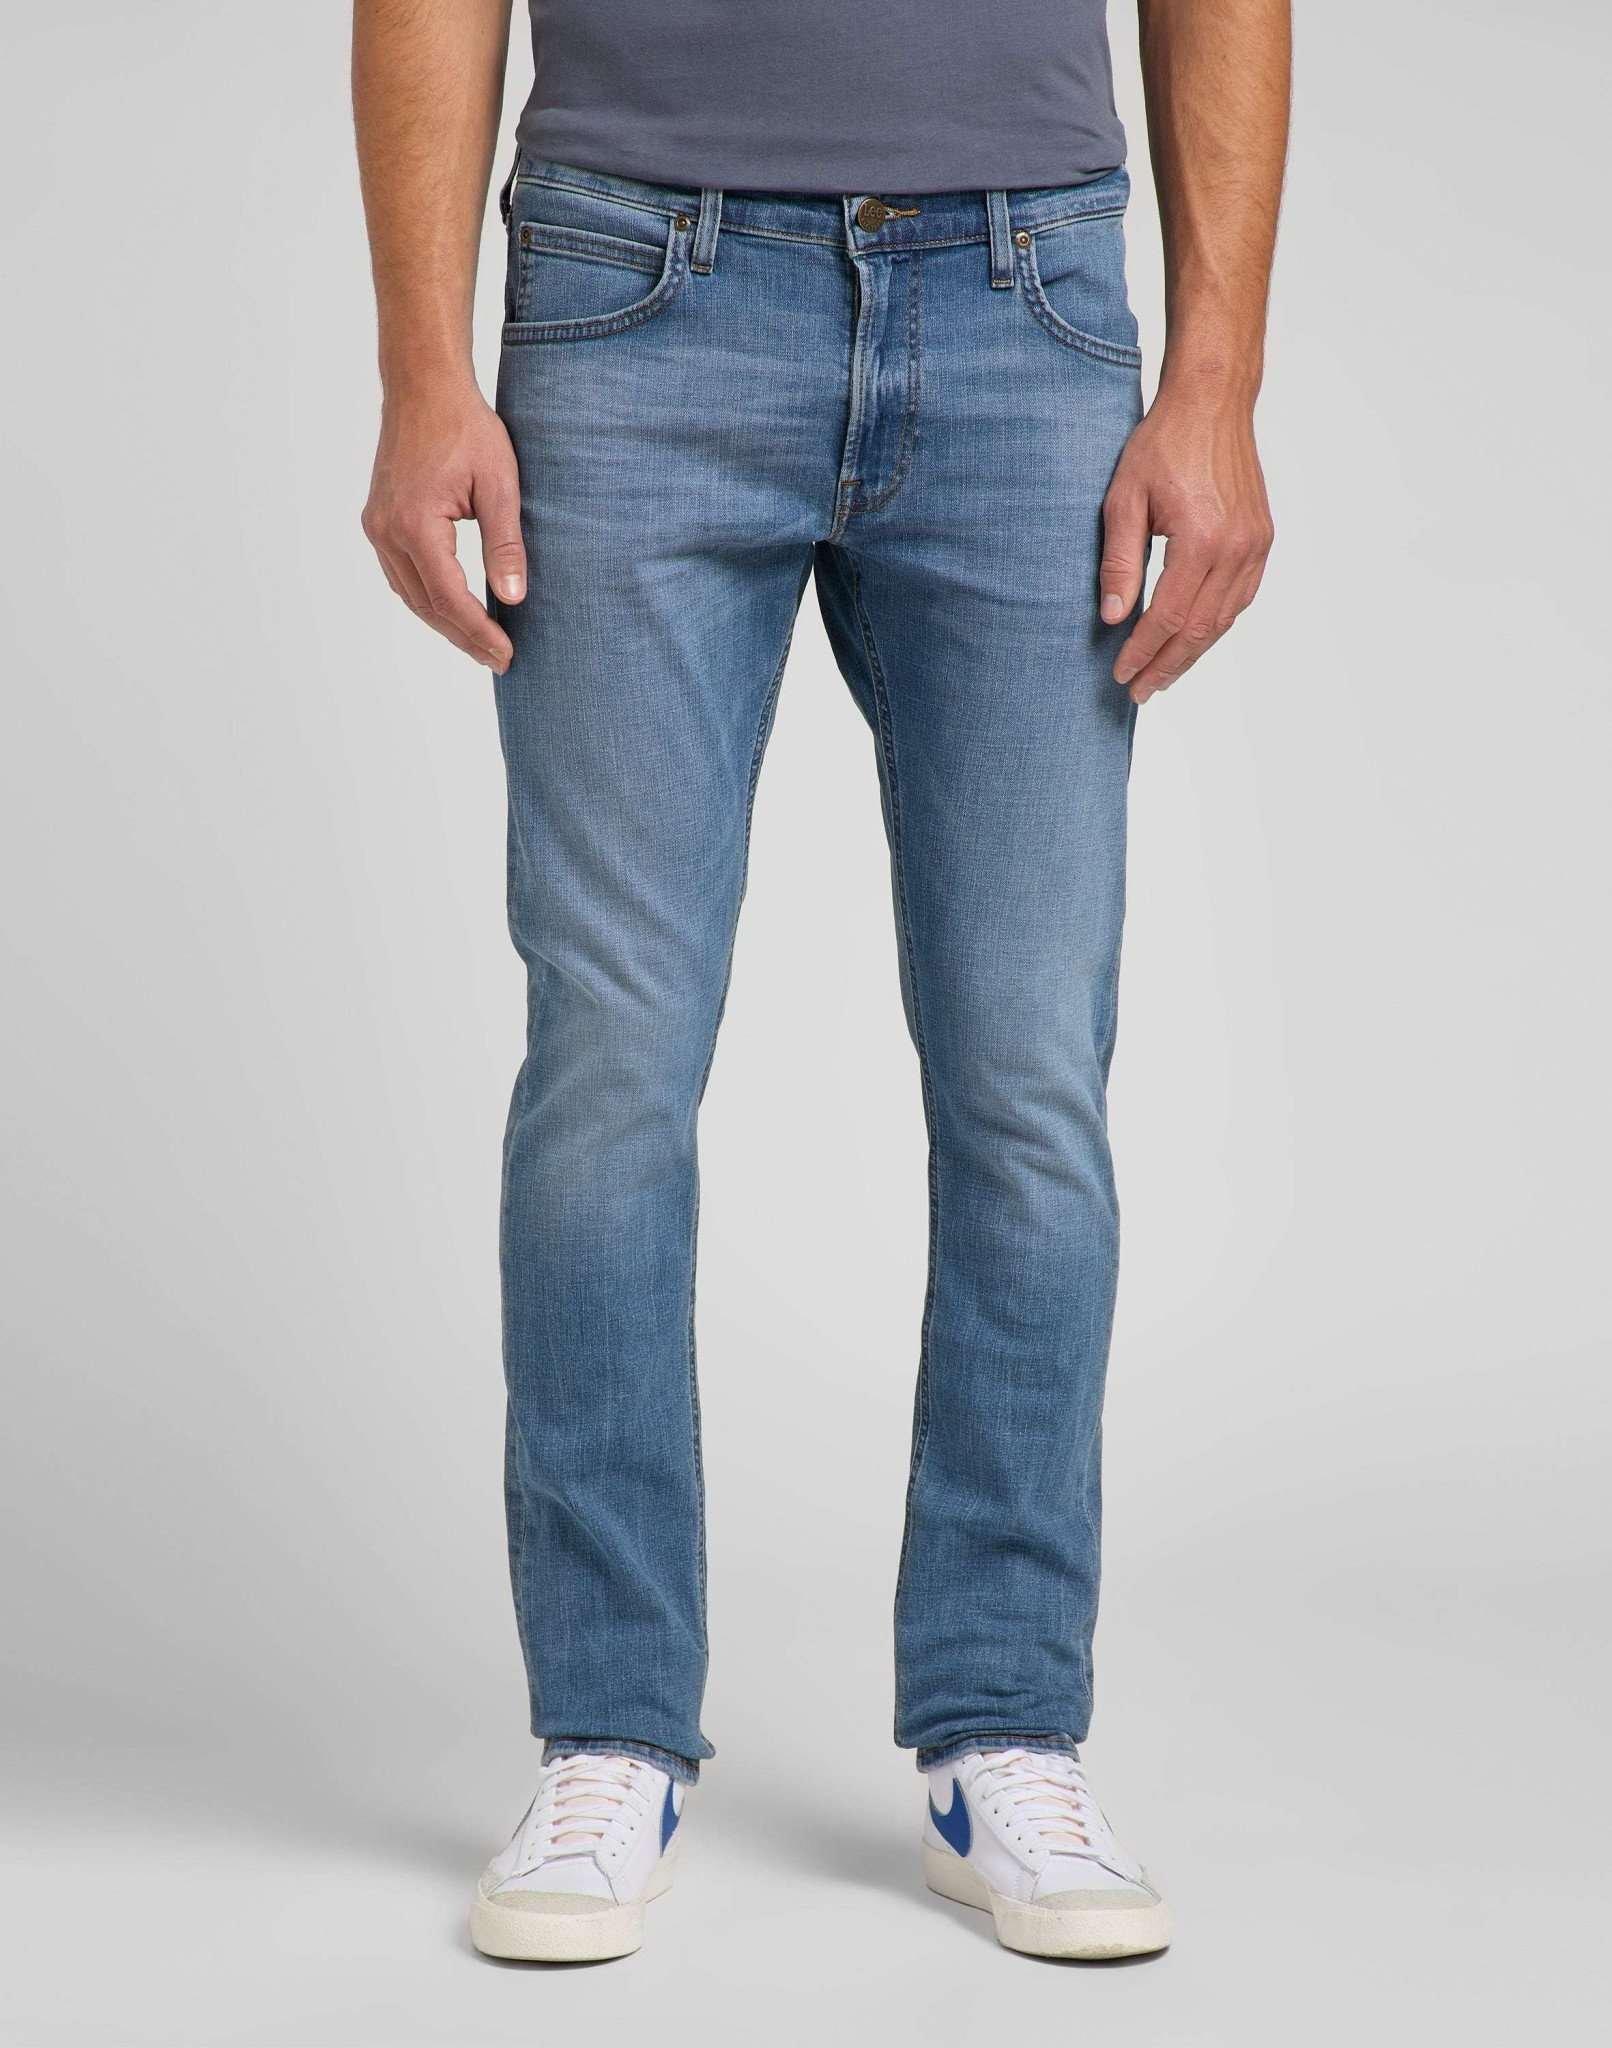 Jeans Slim Fit Luke Herren Blau Denim L32/W38 von Lee